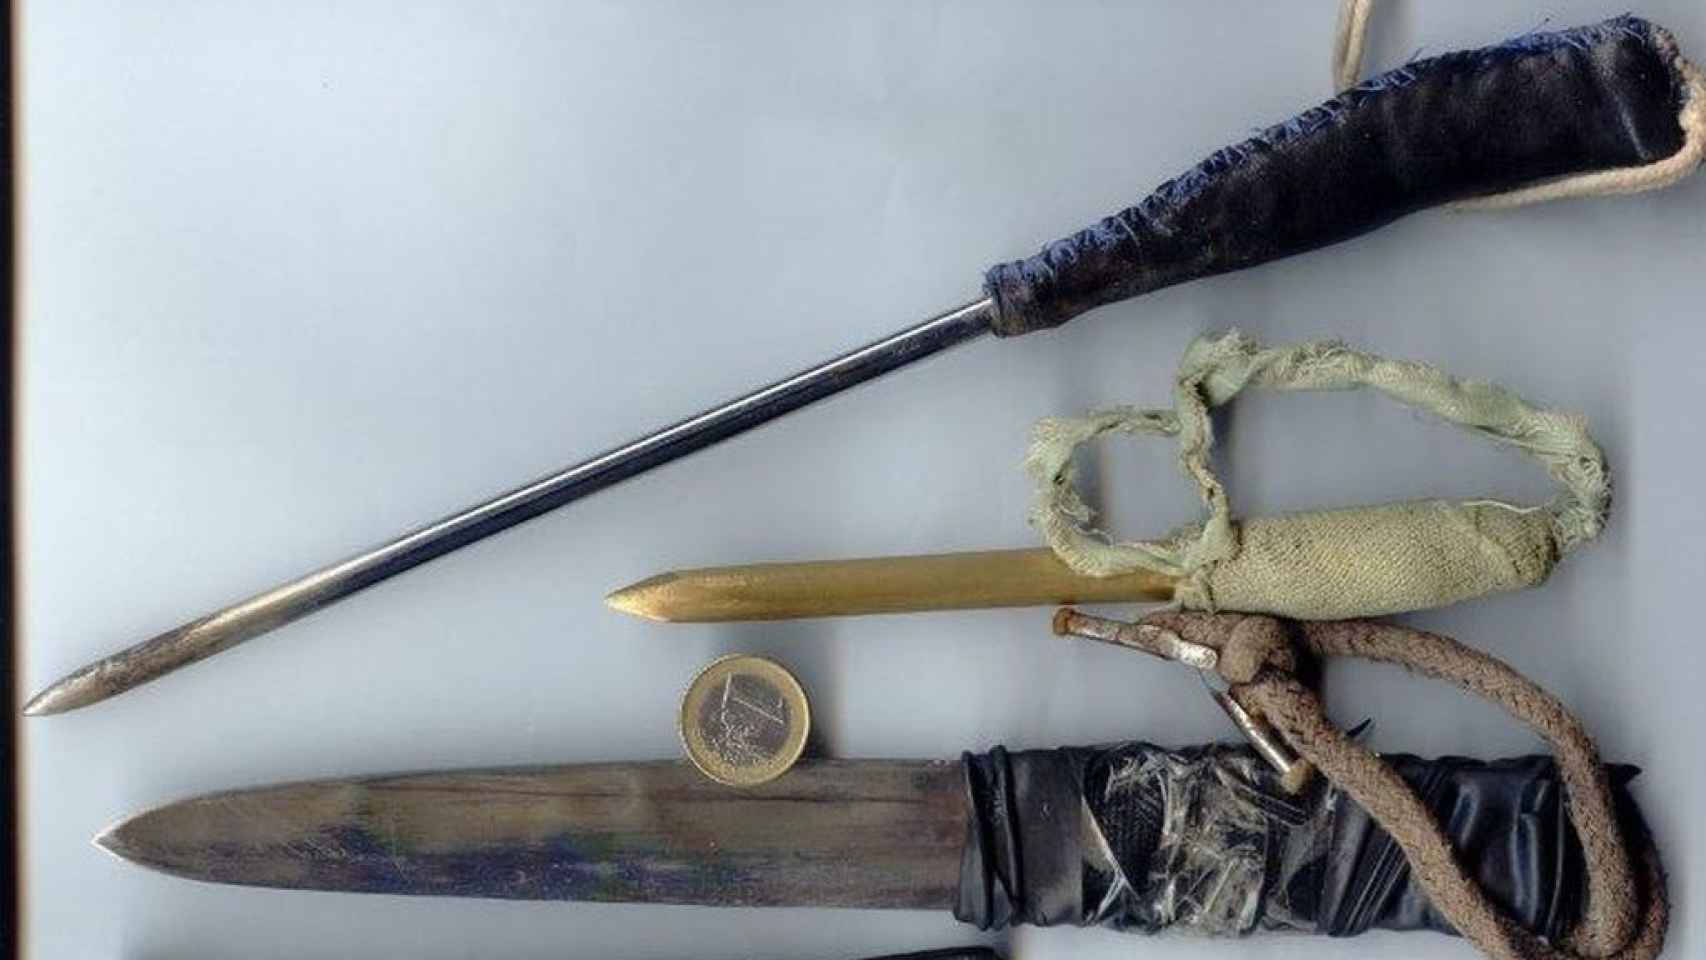 Armas artesanales que fabrican los presos para pelear